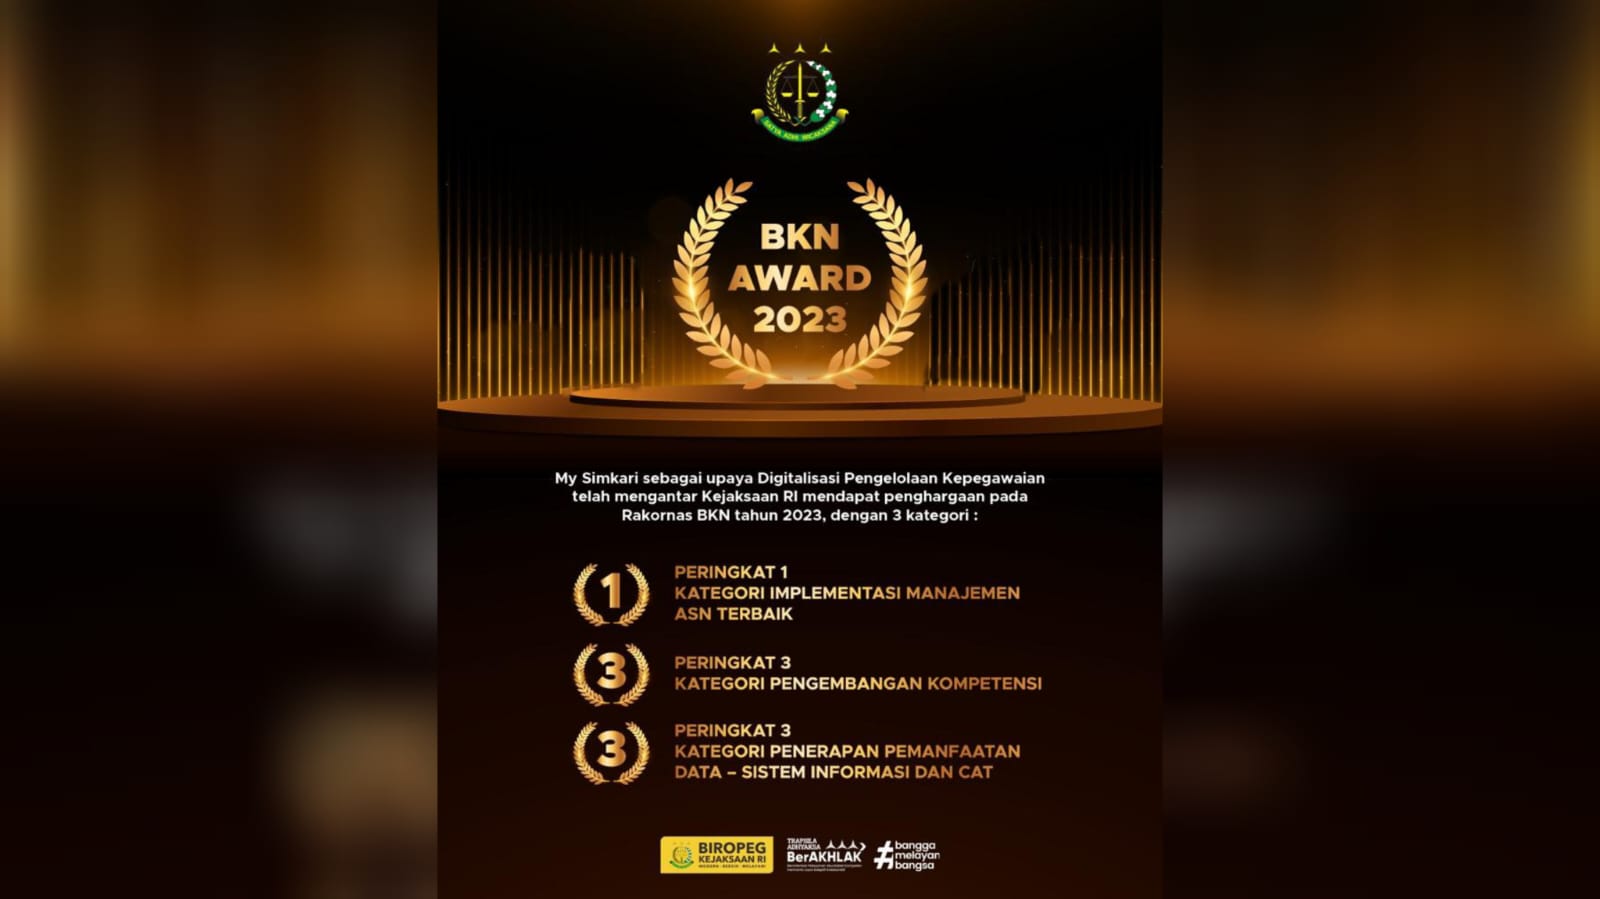 BKN Award 2023, Kejagung RI Raih 3 Penghargaan